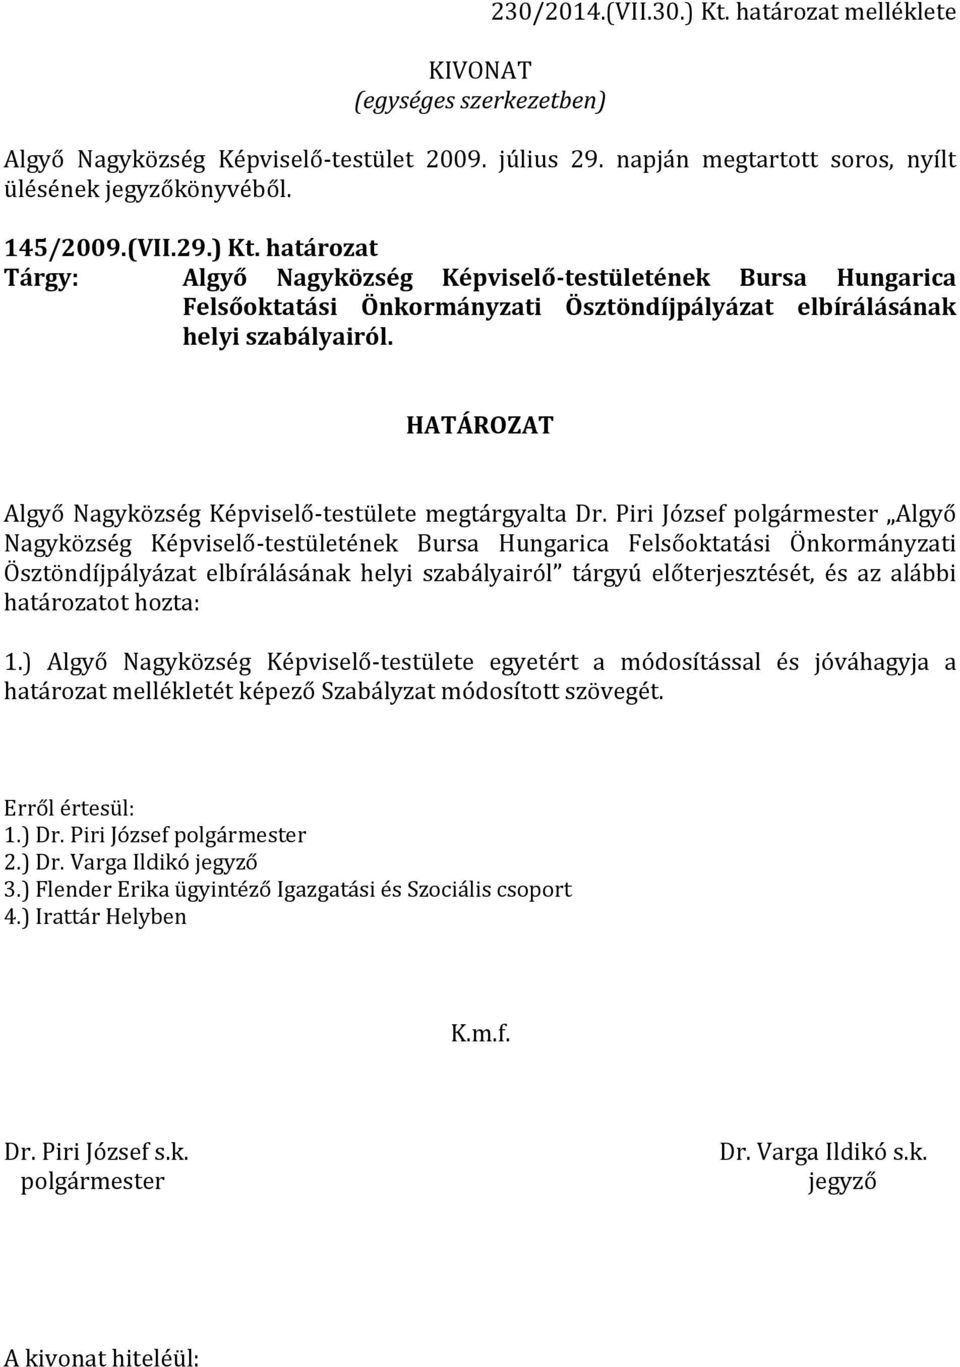 Piri József Algyő Nagyközség Képviselő-testületének Bursa Hungarica Felsőoktatási Önkormányzati Ösztöndíjpályázat elbírálásának helyi szabályairól tárgyú előterjesztését, és az alábbi határozatot